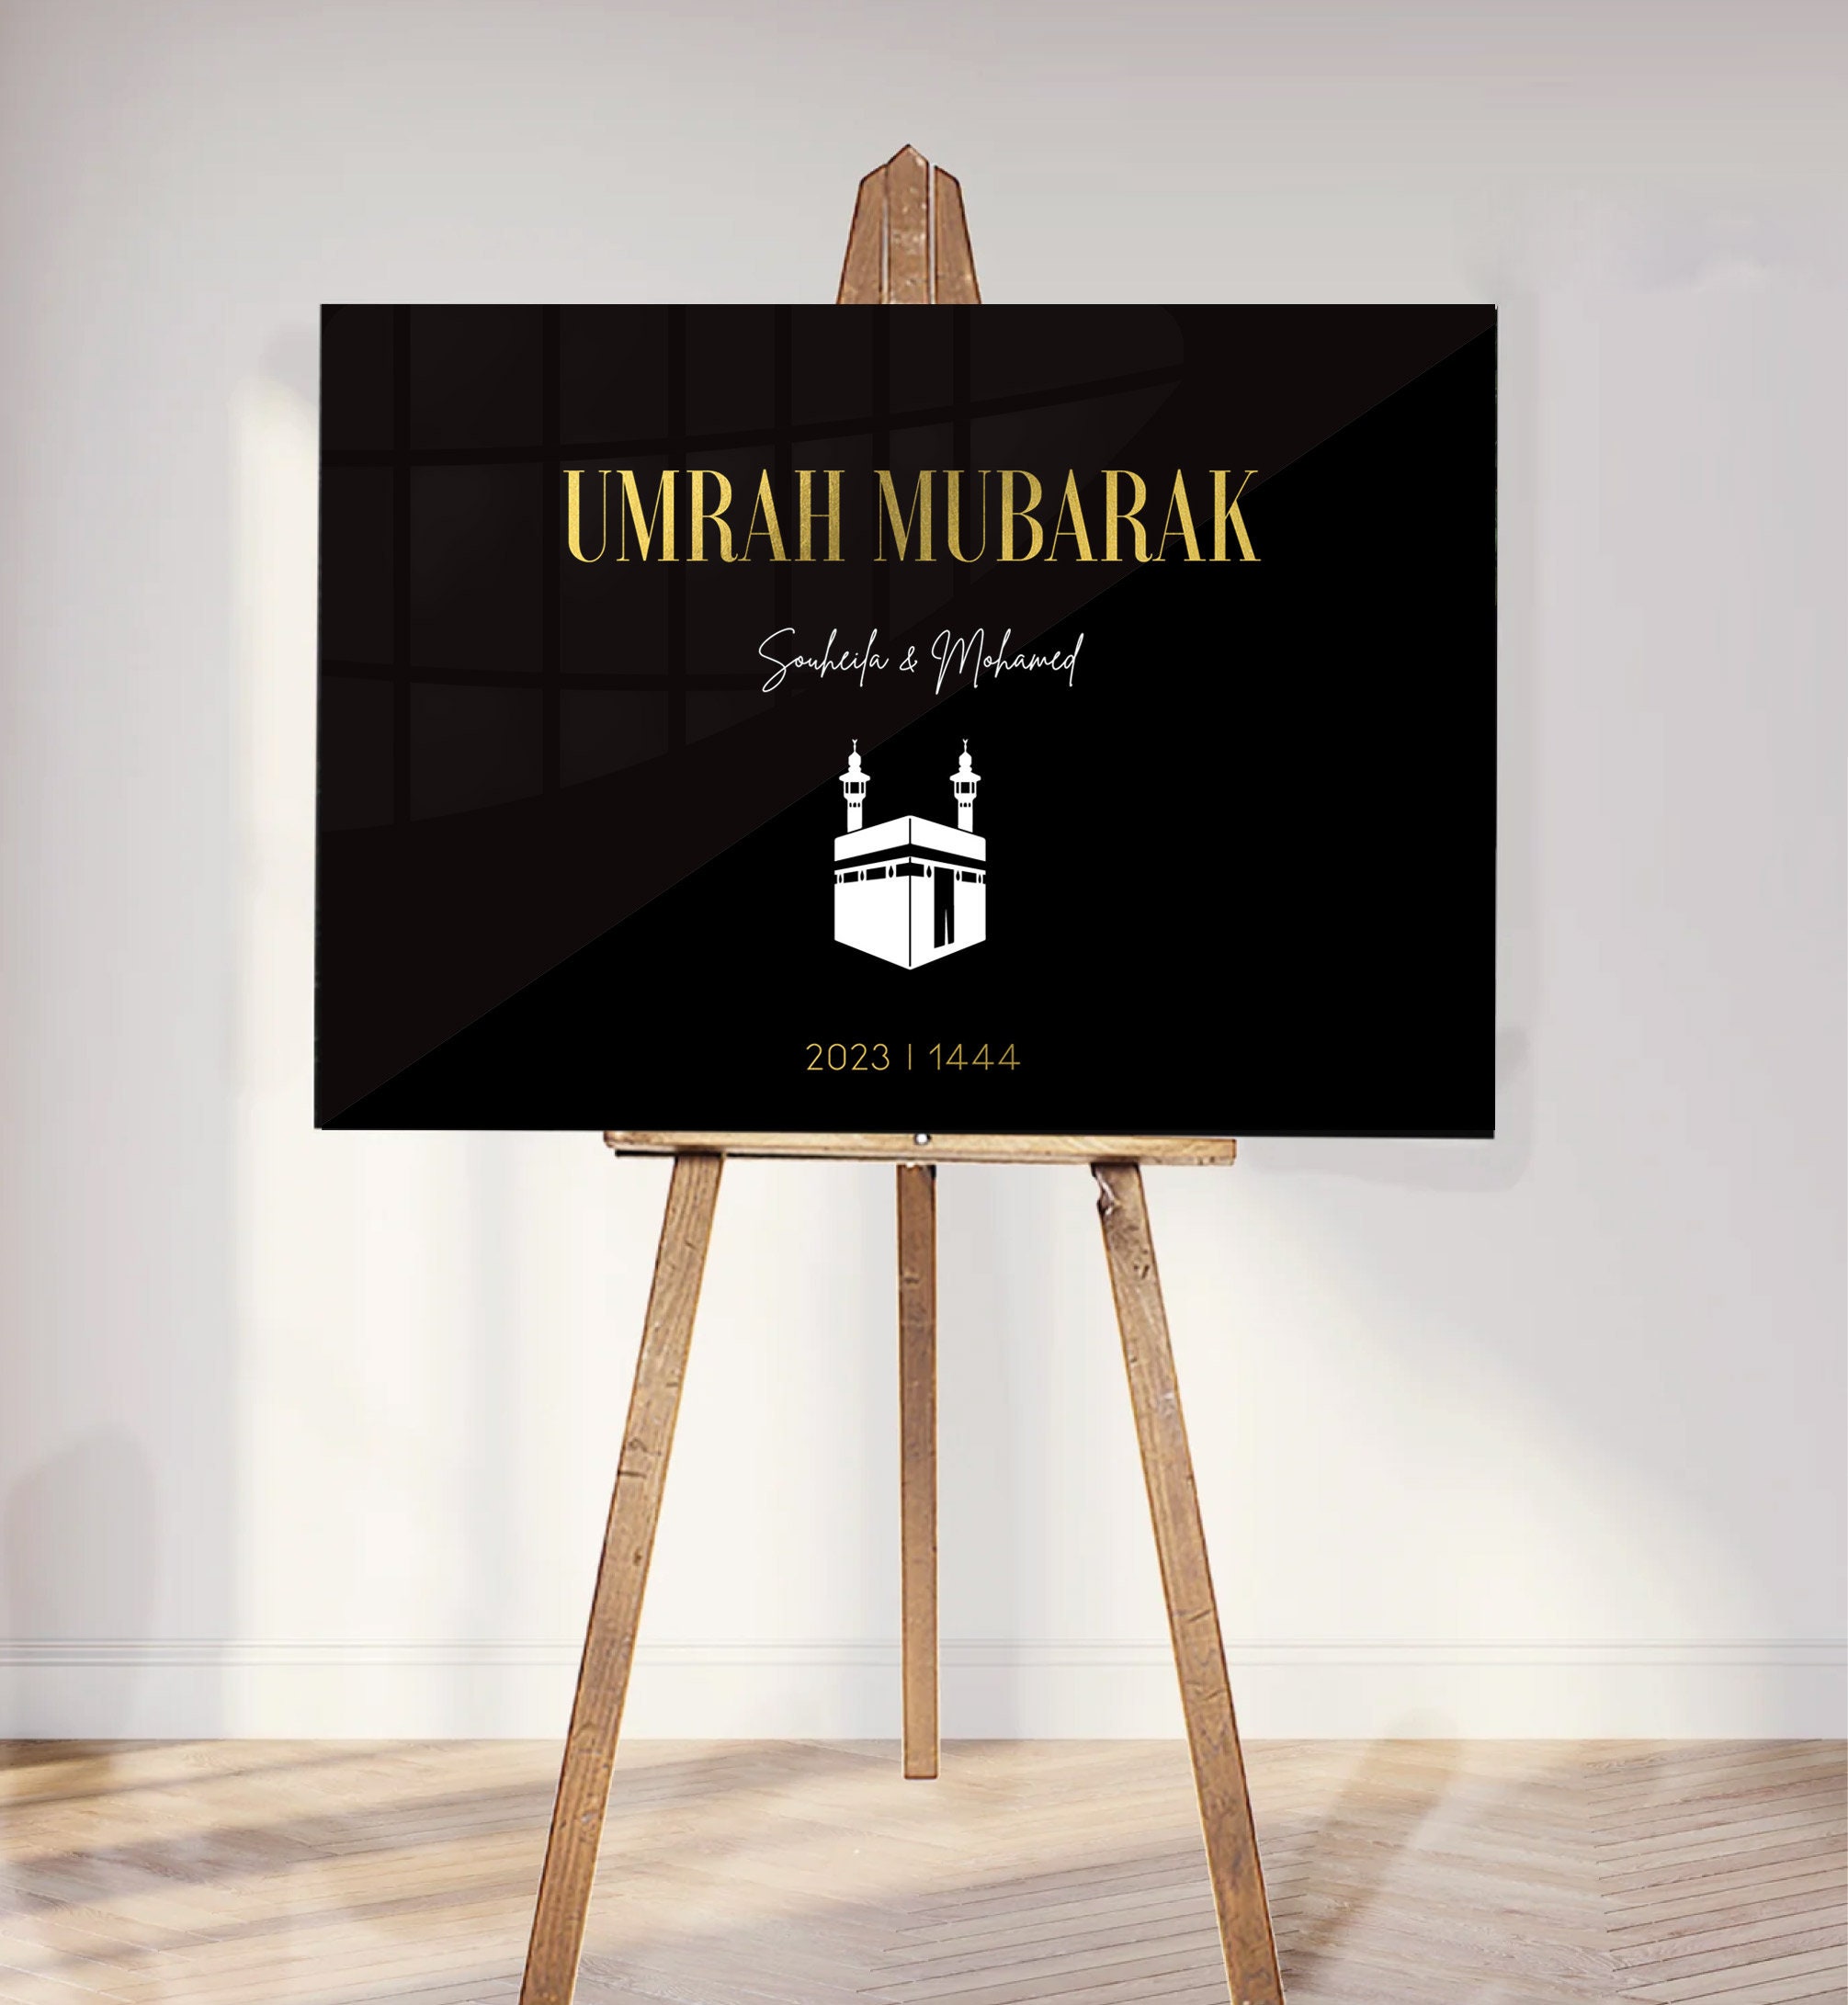 Omra Mubarak welcome sign, Umrah Mubarak, Omrah, Oumra Hajj, pilgrimage,  plexi sign, Muslim painting, personalized gift